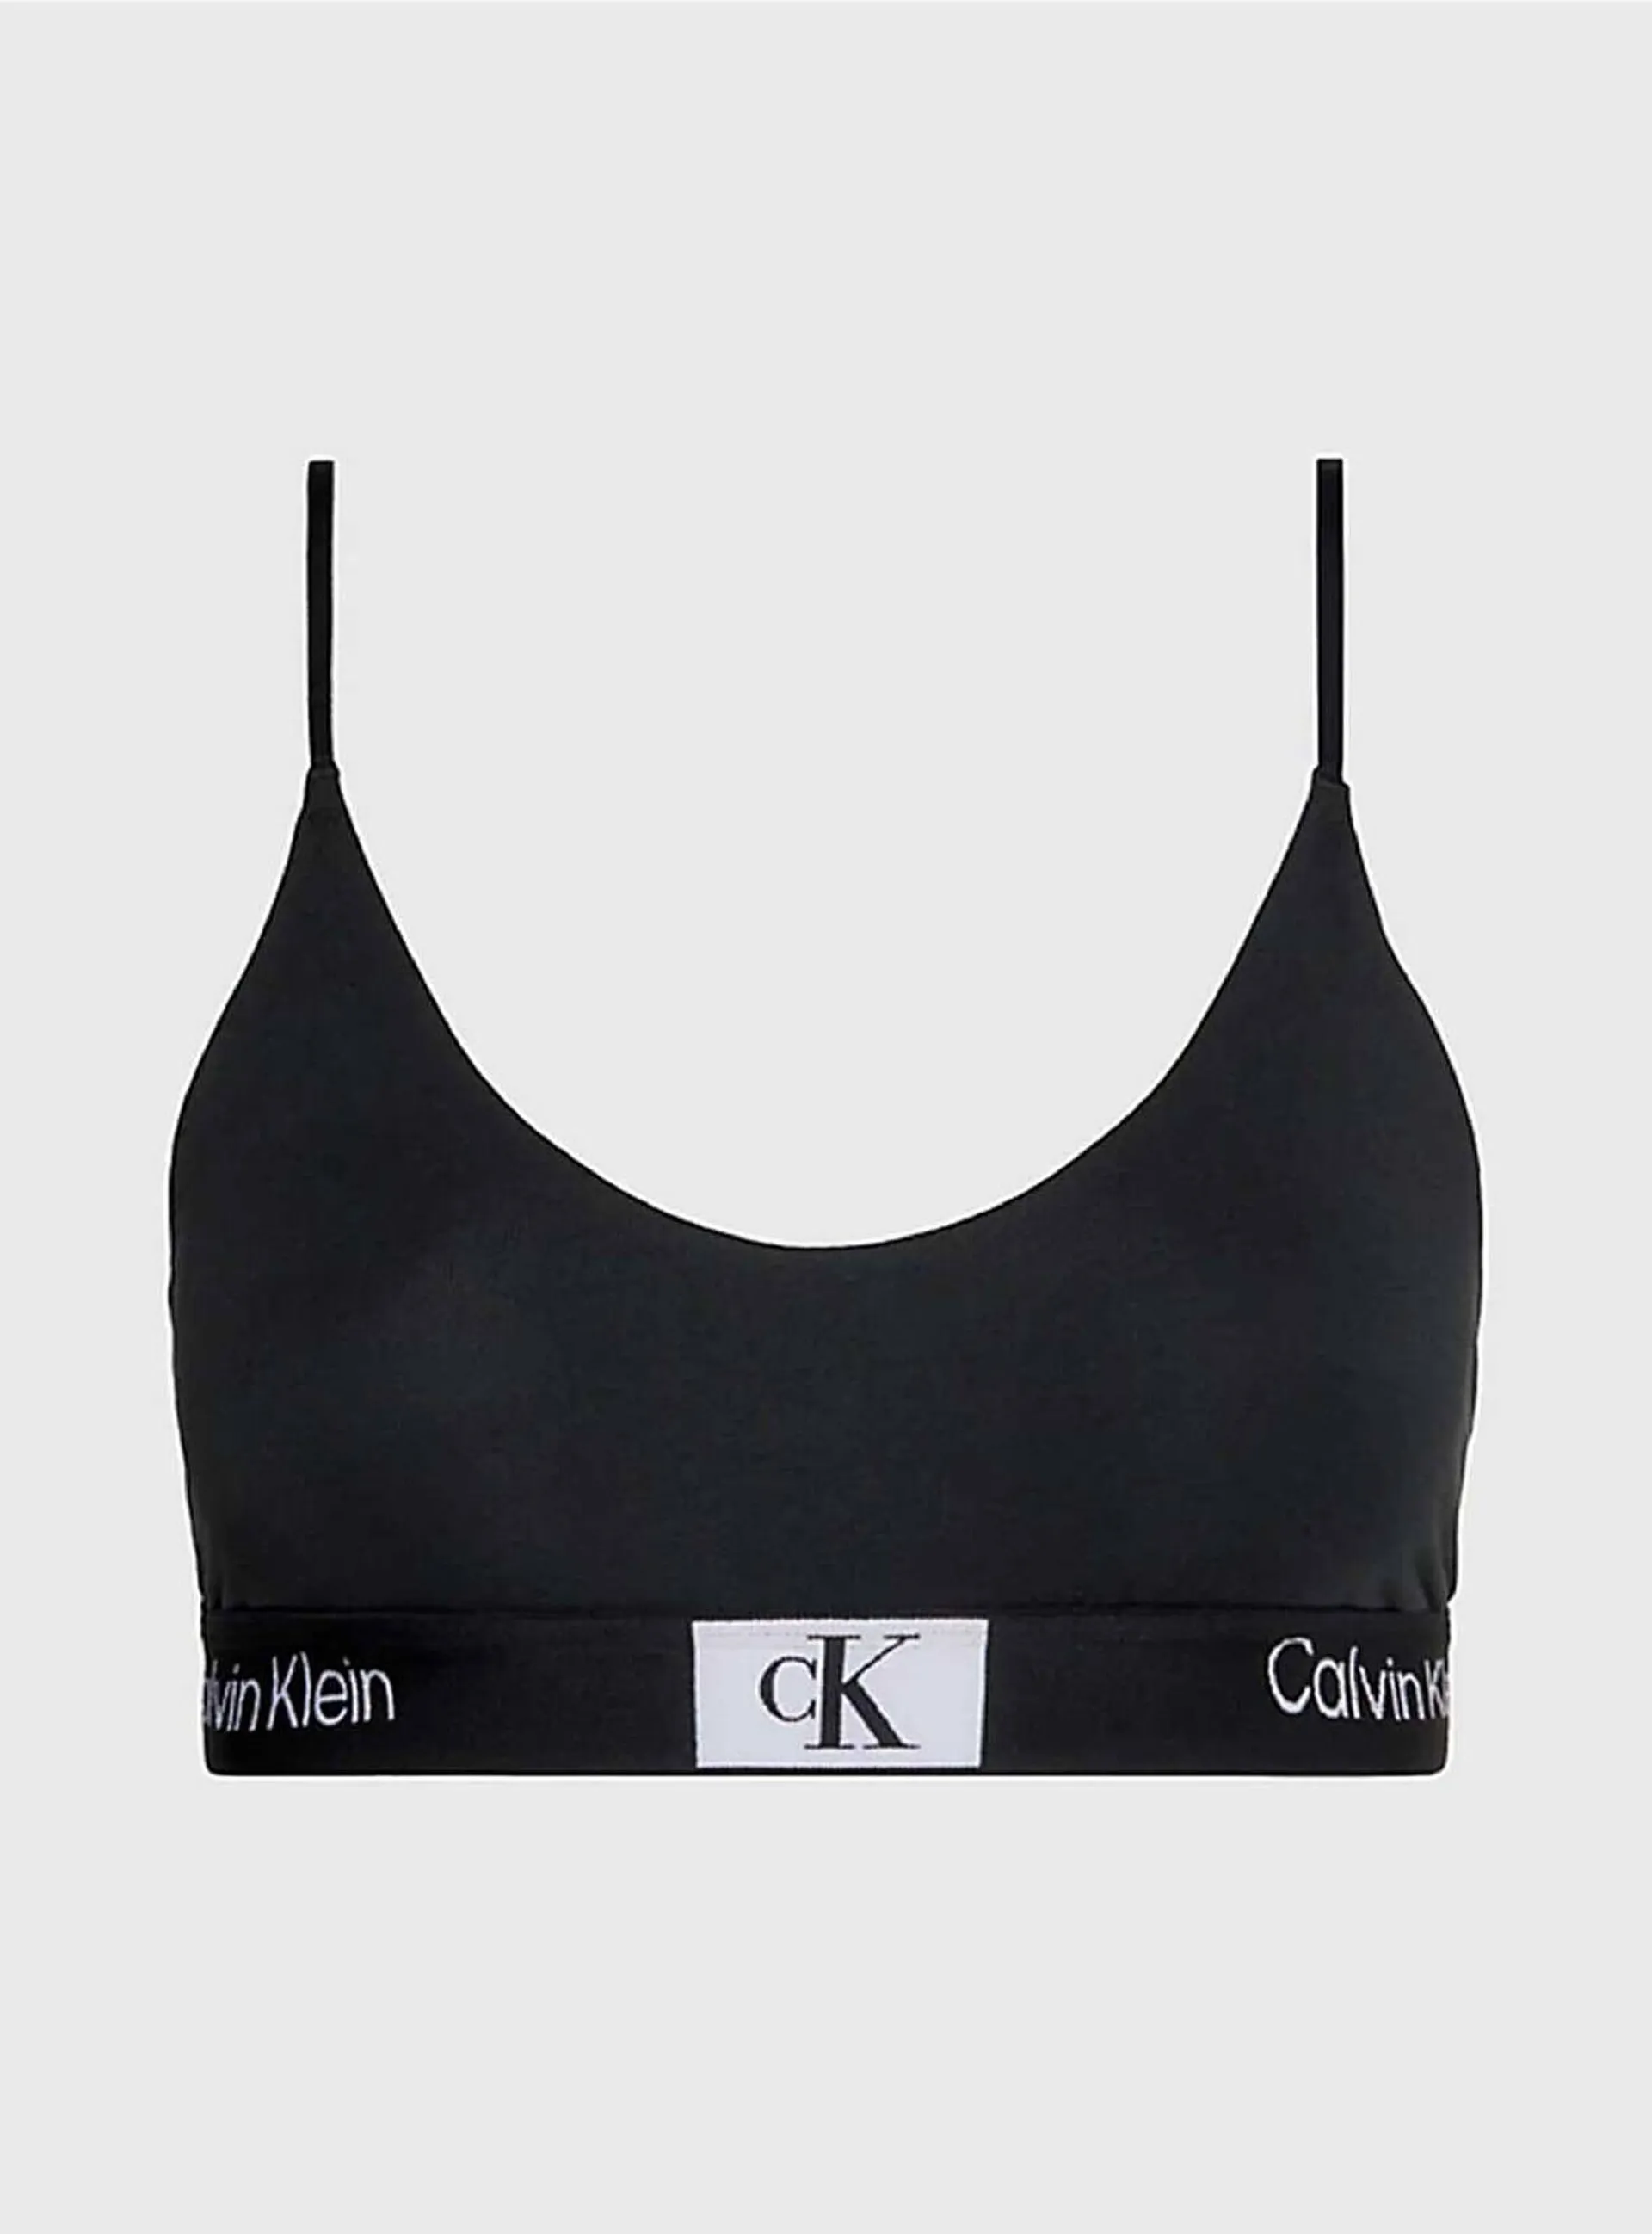 Catálogo Calvin Klein - 7